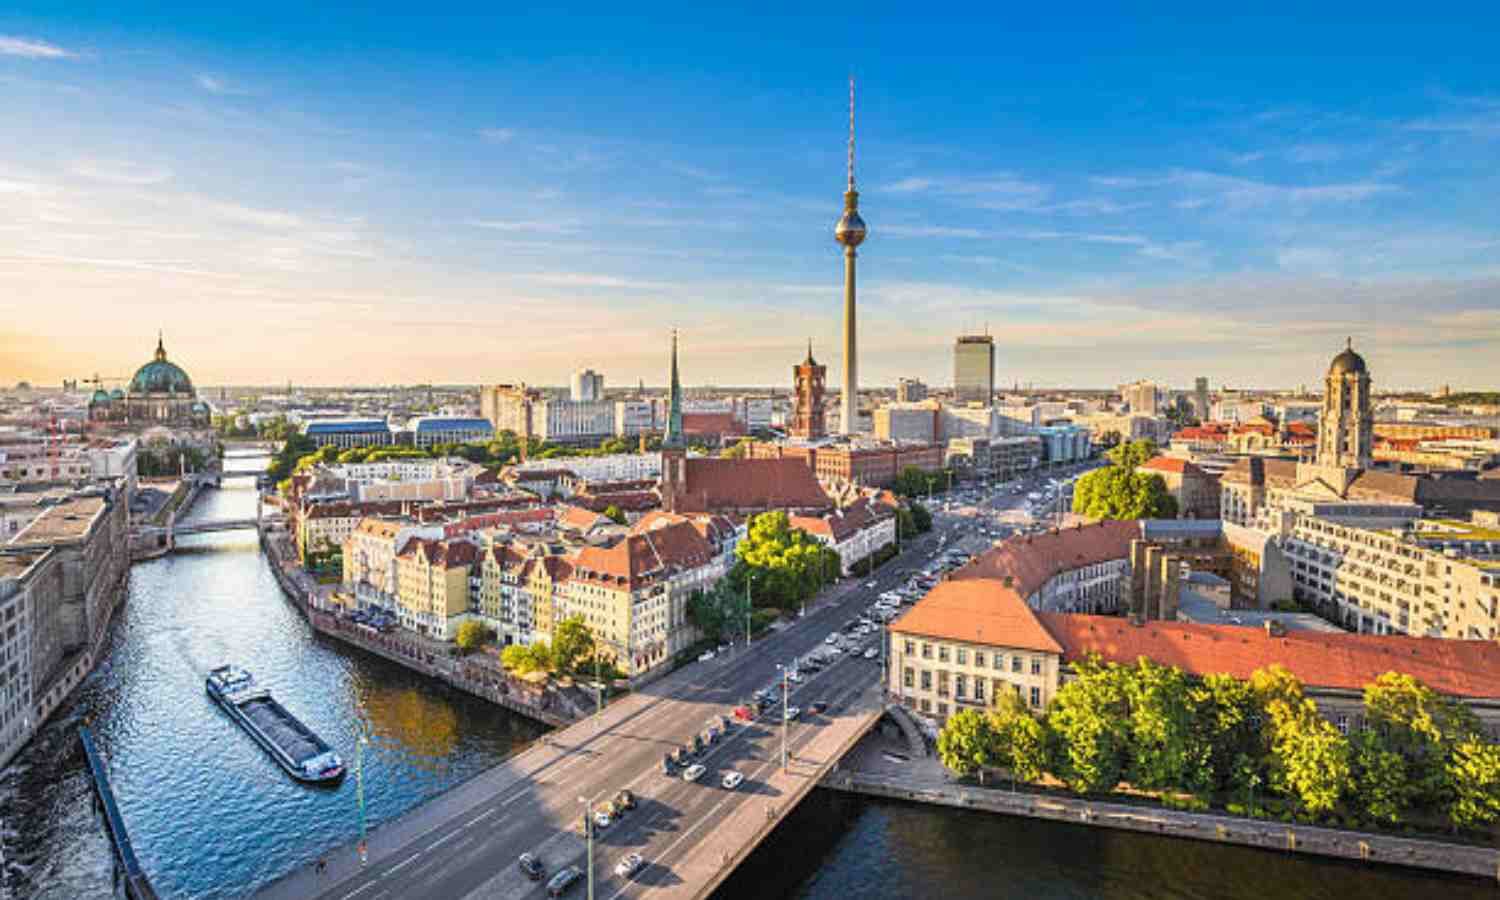 Depende de si vives en la ciudad o a las afueras. Las ciudades son más caras. Si piensas emigrar a Alemania y vas a vivir en ciudad, hay notables diferencias del costo de vida en Alemania entre unas ciudades a otras. 